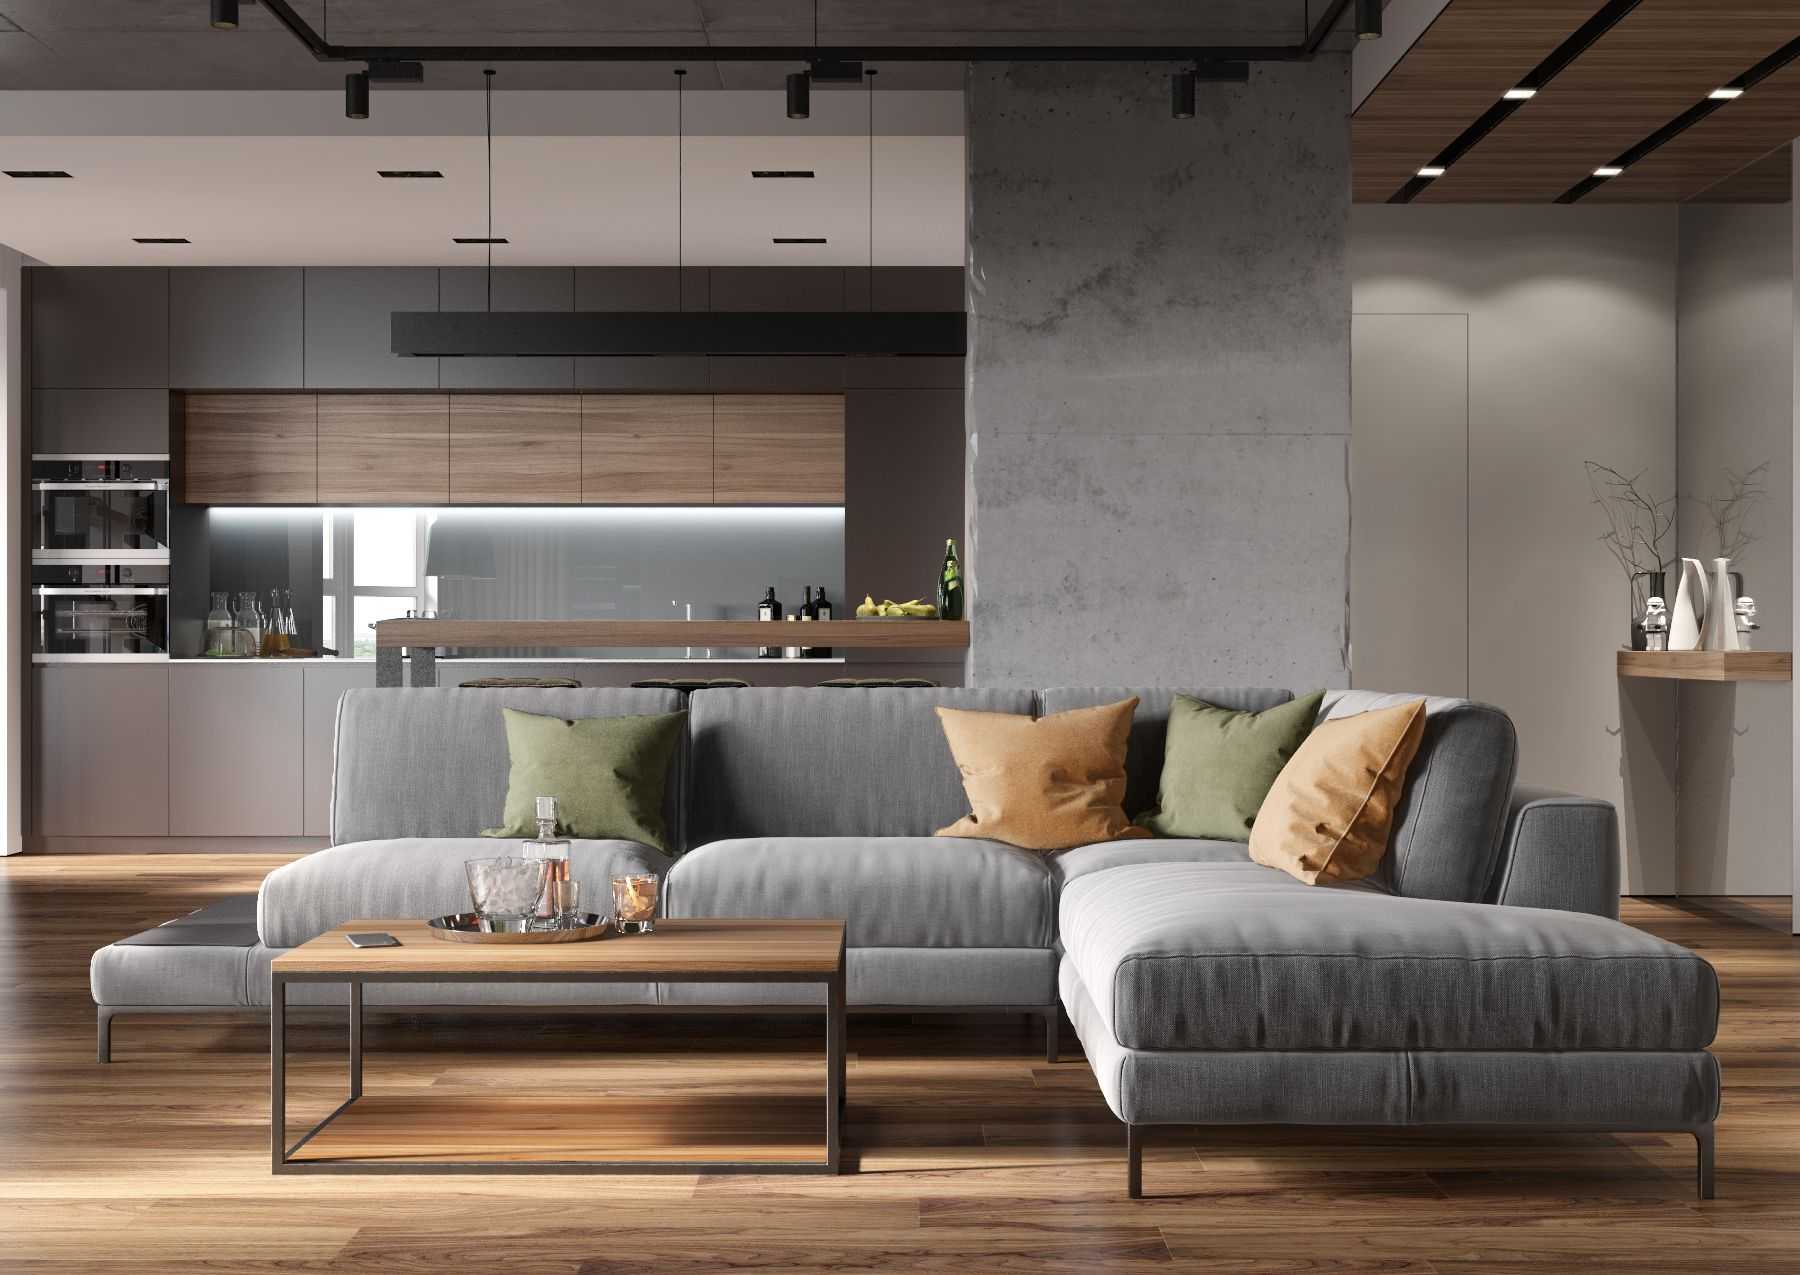 Создаем дизайн гостиной в стиле минимализм: советы по подбору отделки, мебели и декора